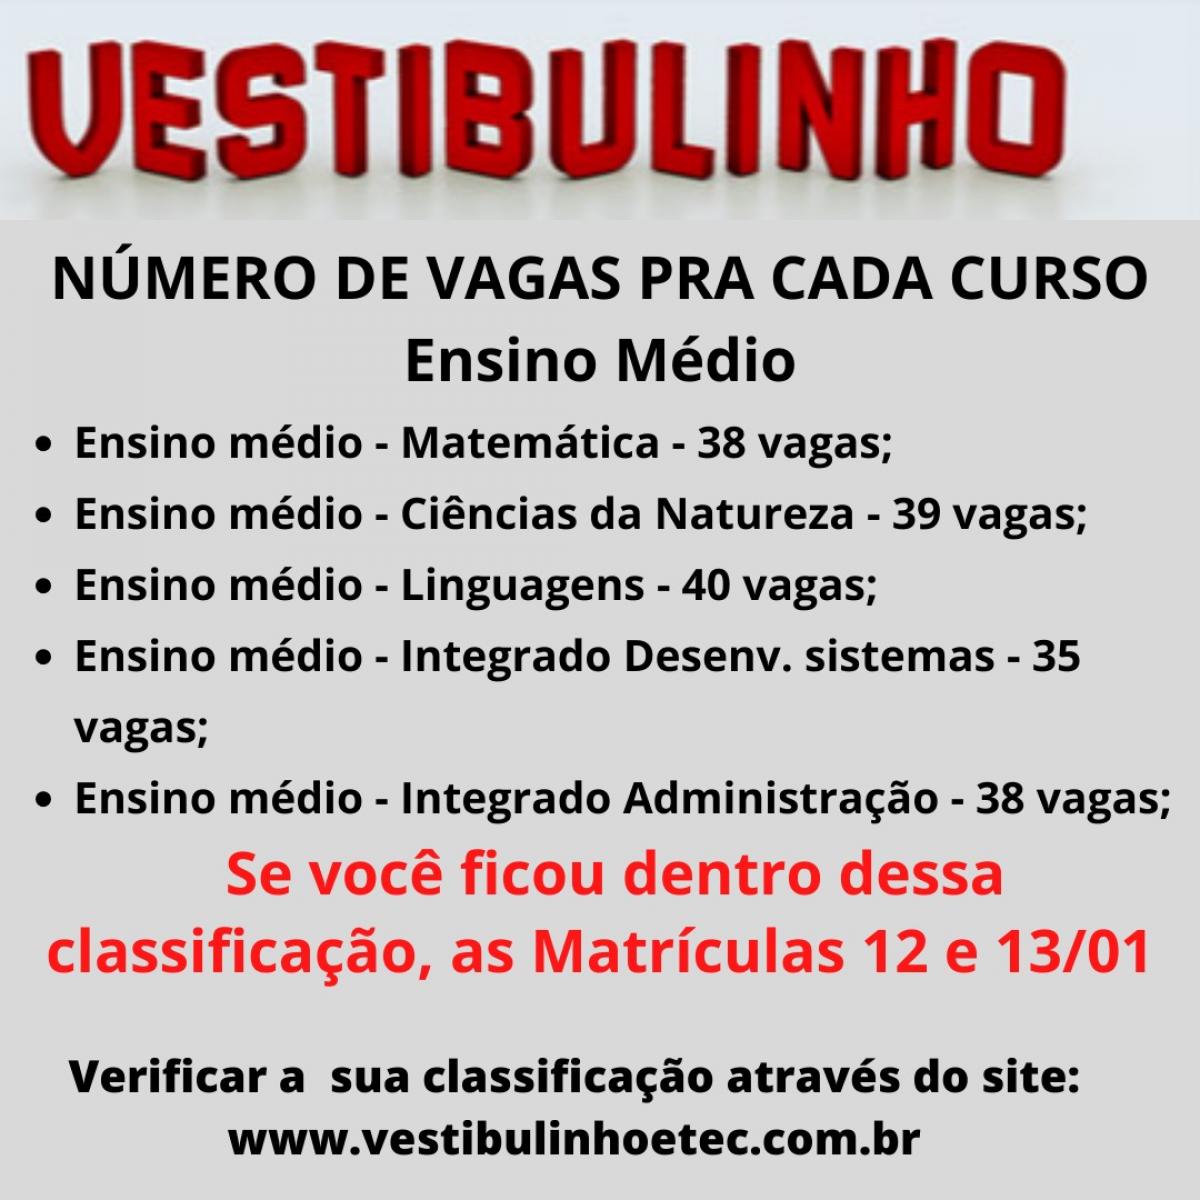 ETEC DIVULGA RELAÇÃO DE CURSOS PARA VESTIBULINHO 1° SEM/2019